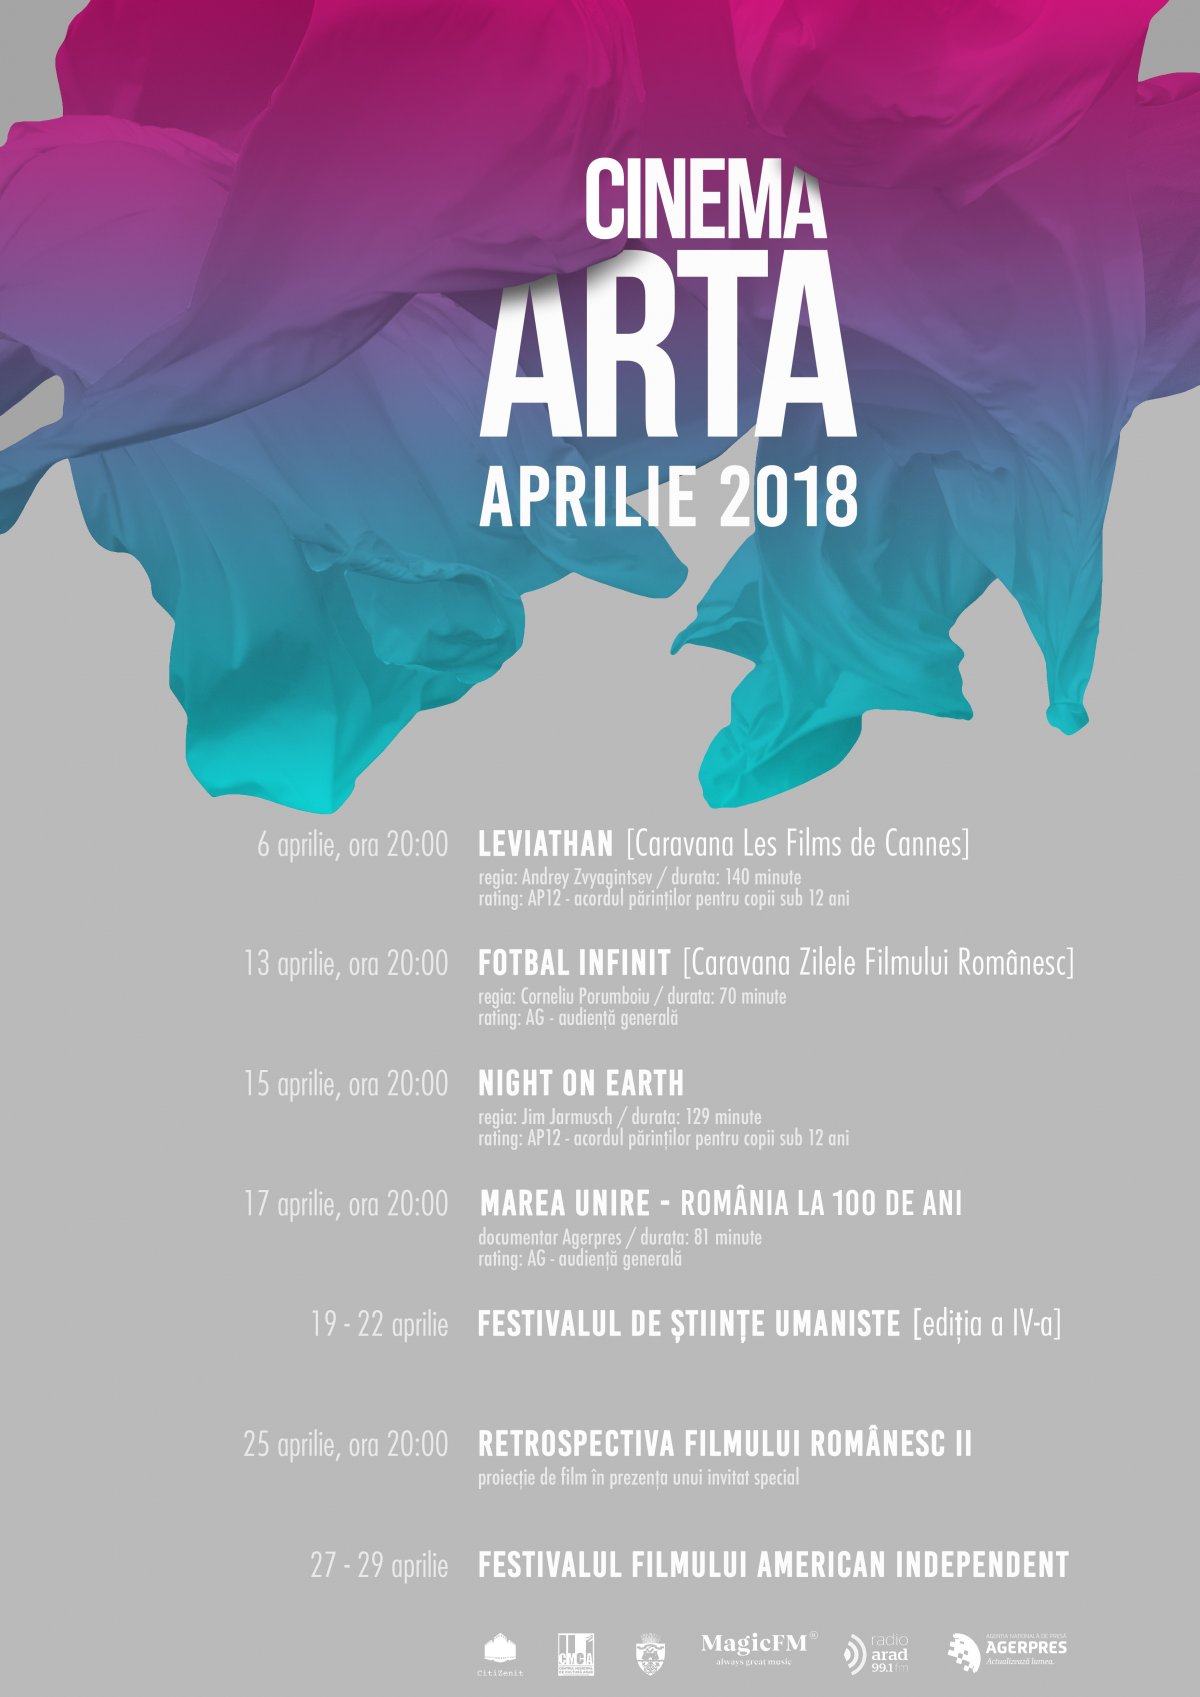 Filme independente de pe 3 continente în aprilie la Arta 